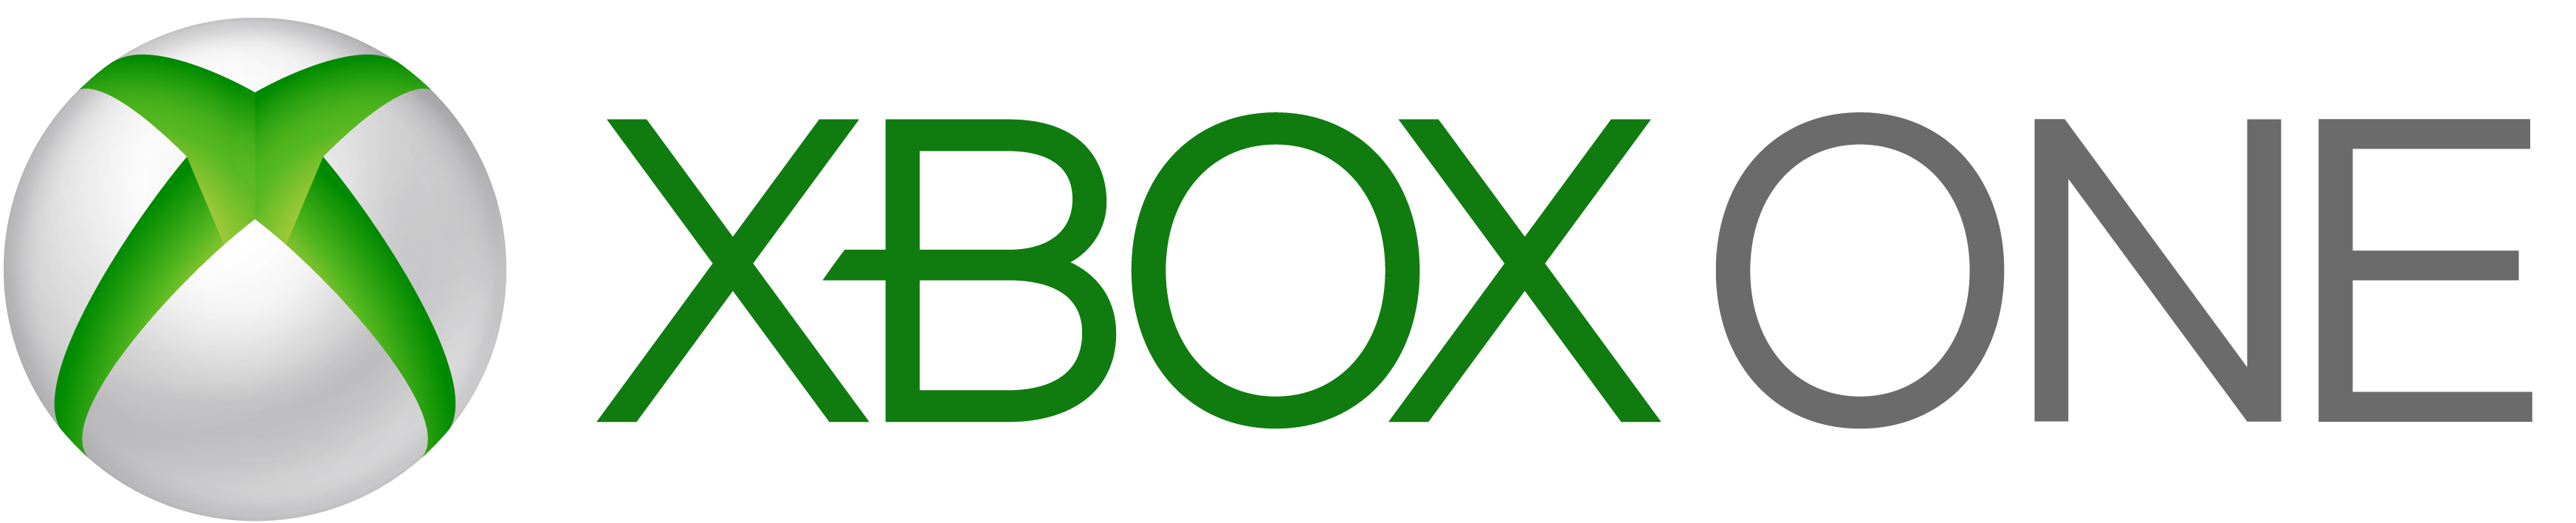 Xbone Logo - Xbox Logo Png - Free Transparent PNG Logos